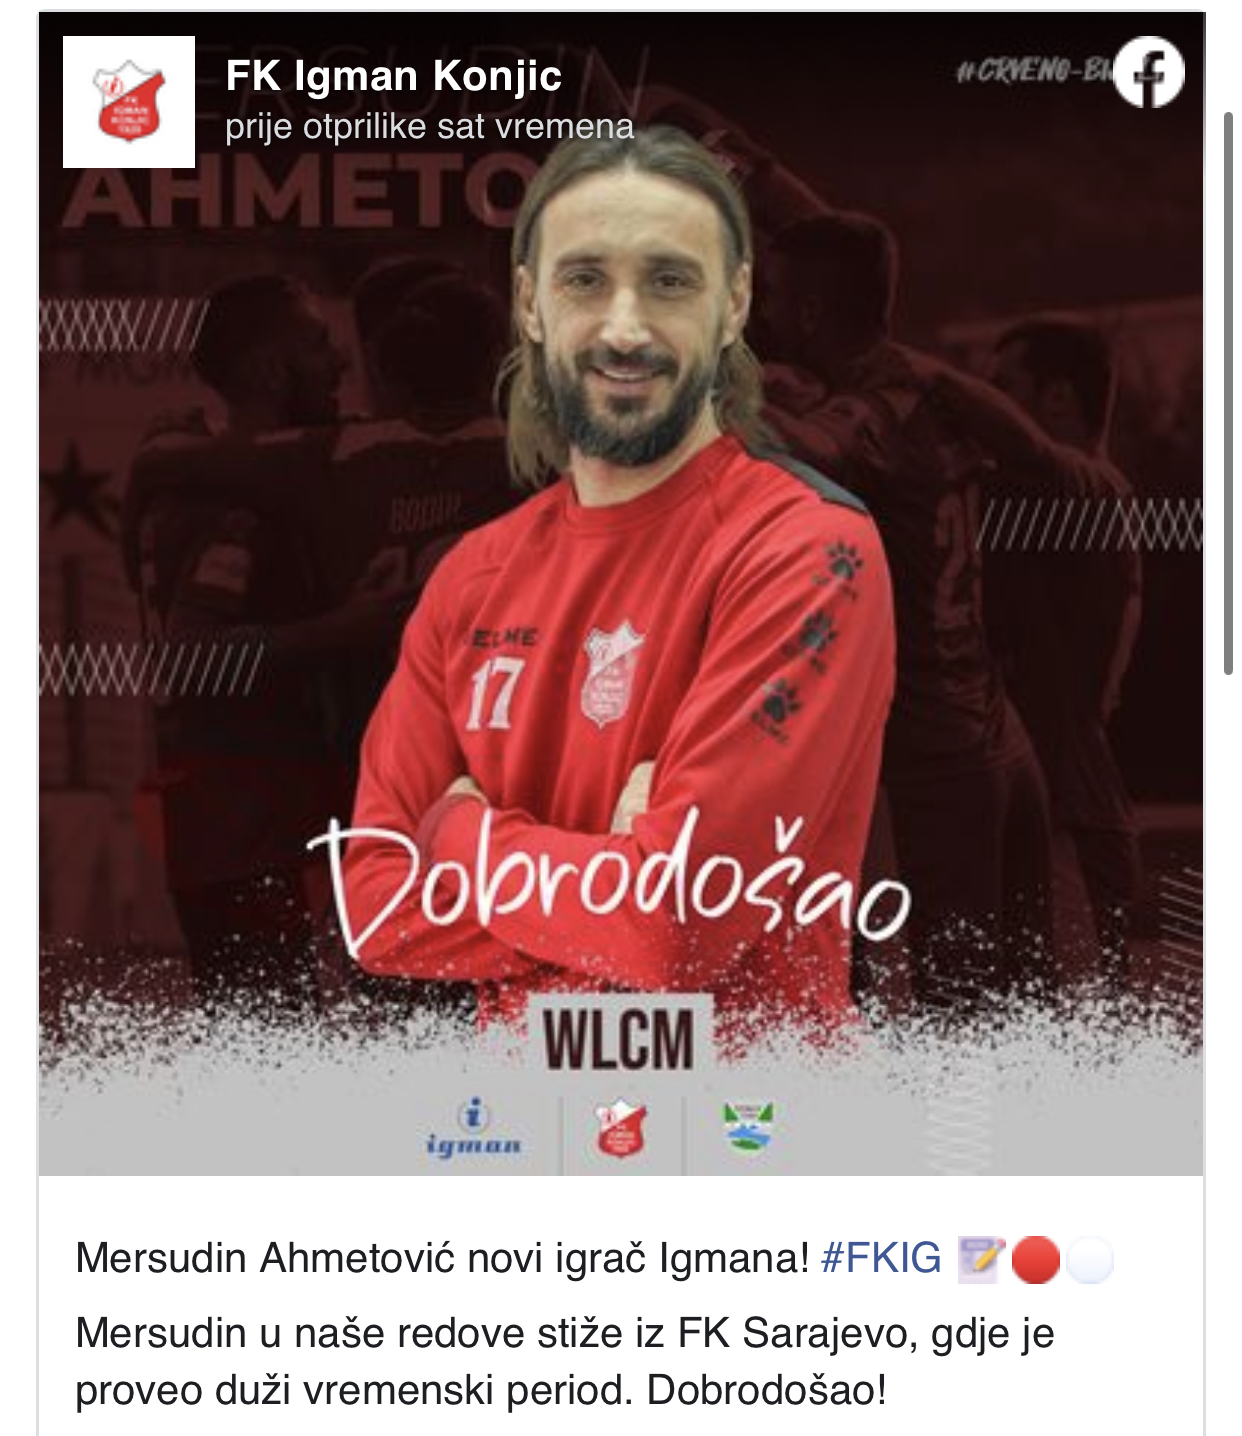 mersudin ahmetović je novi igrač igmana iz konjica, ništa od najavljenog oproštaja u sarajevu protiv željezničara